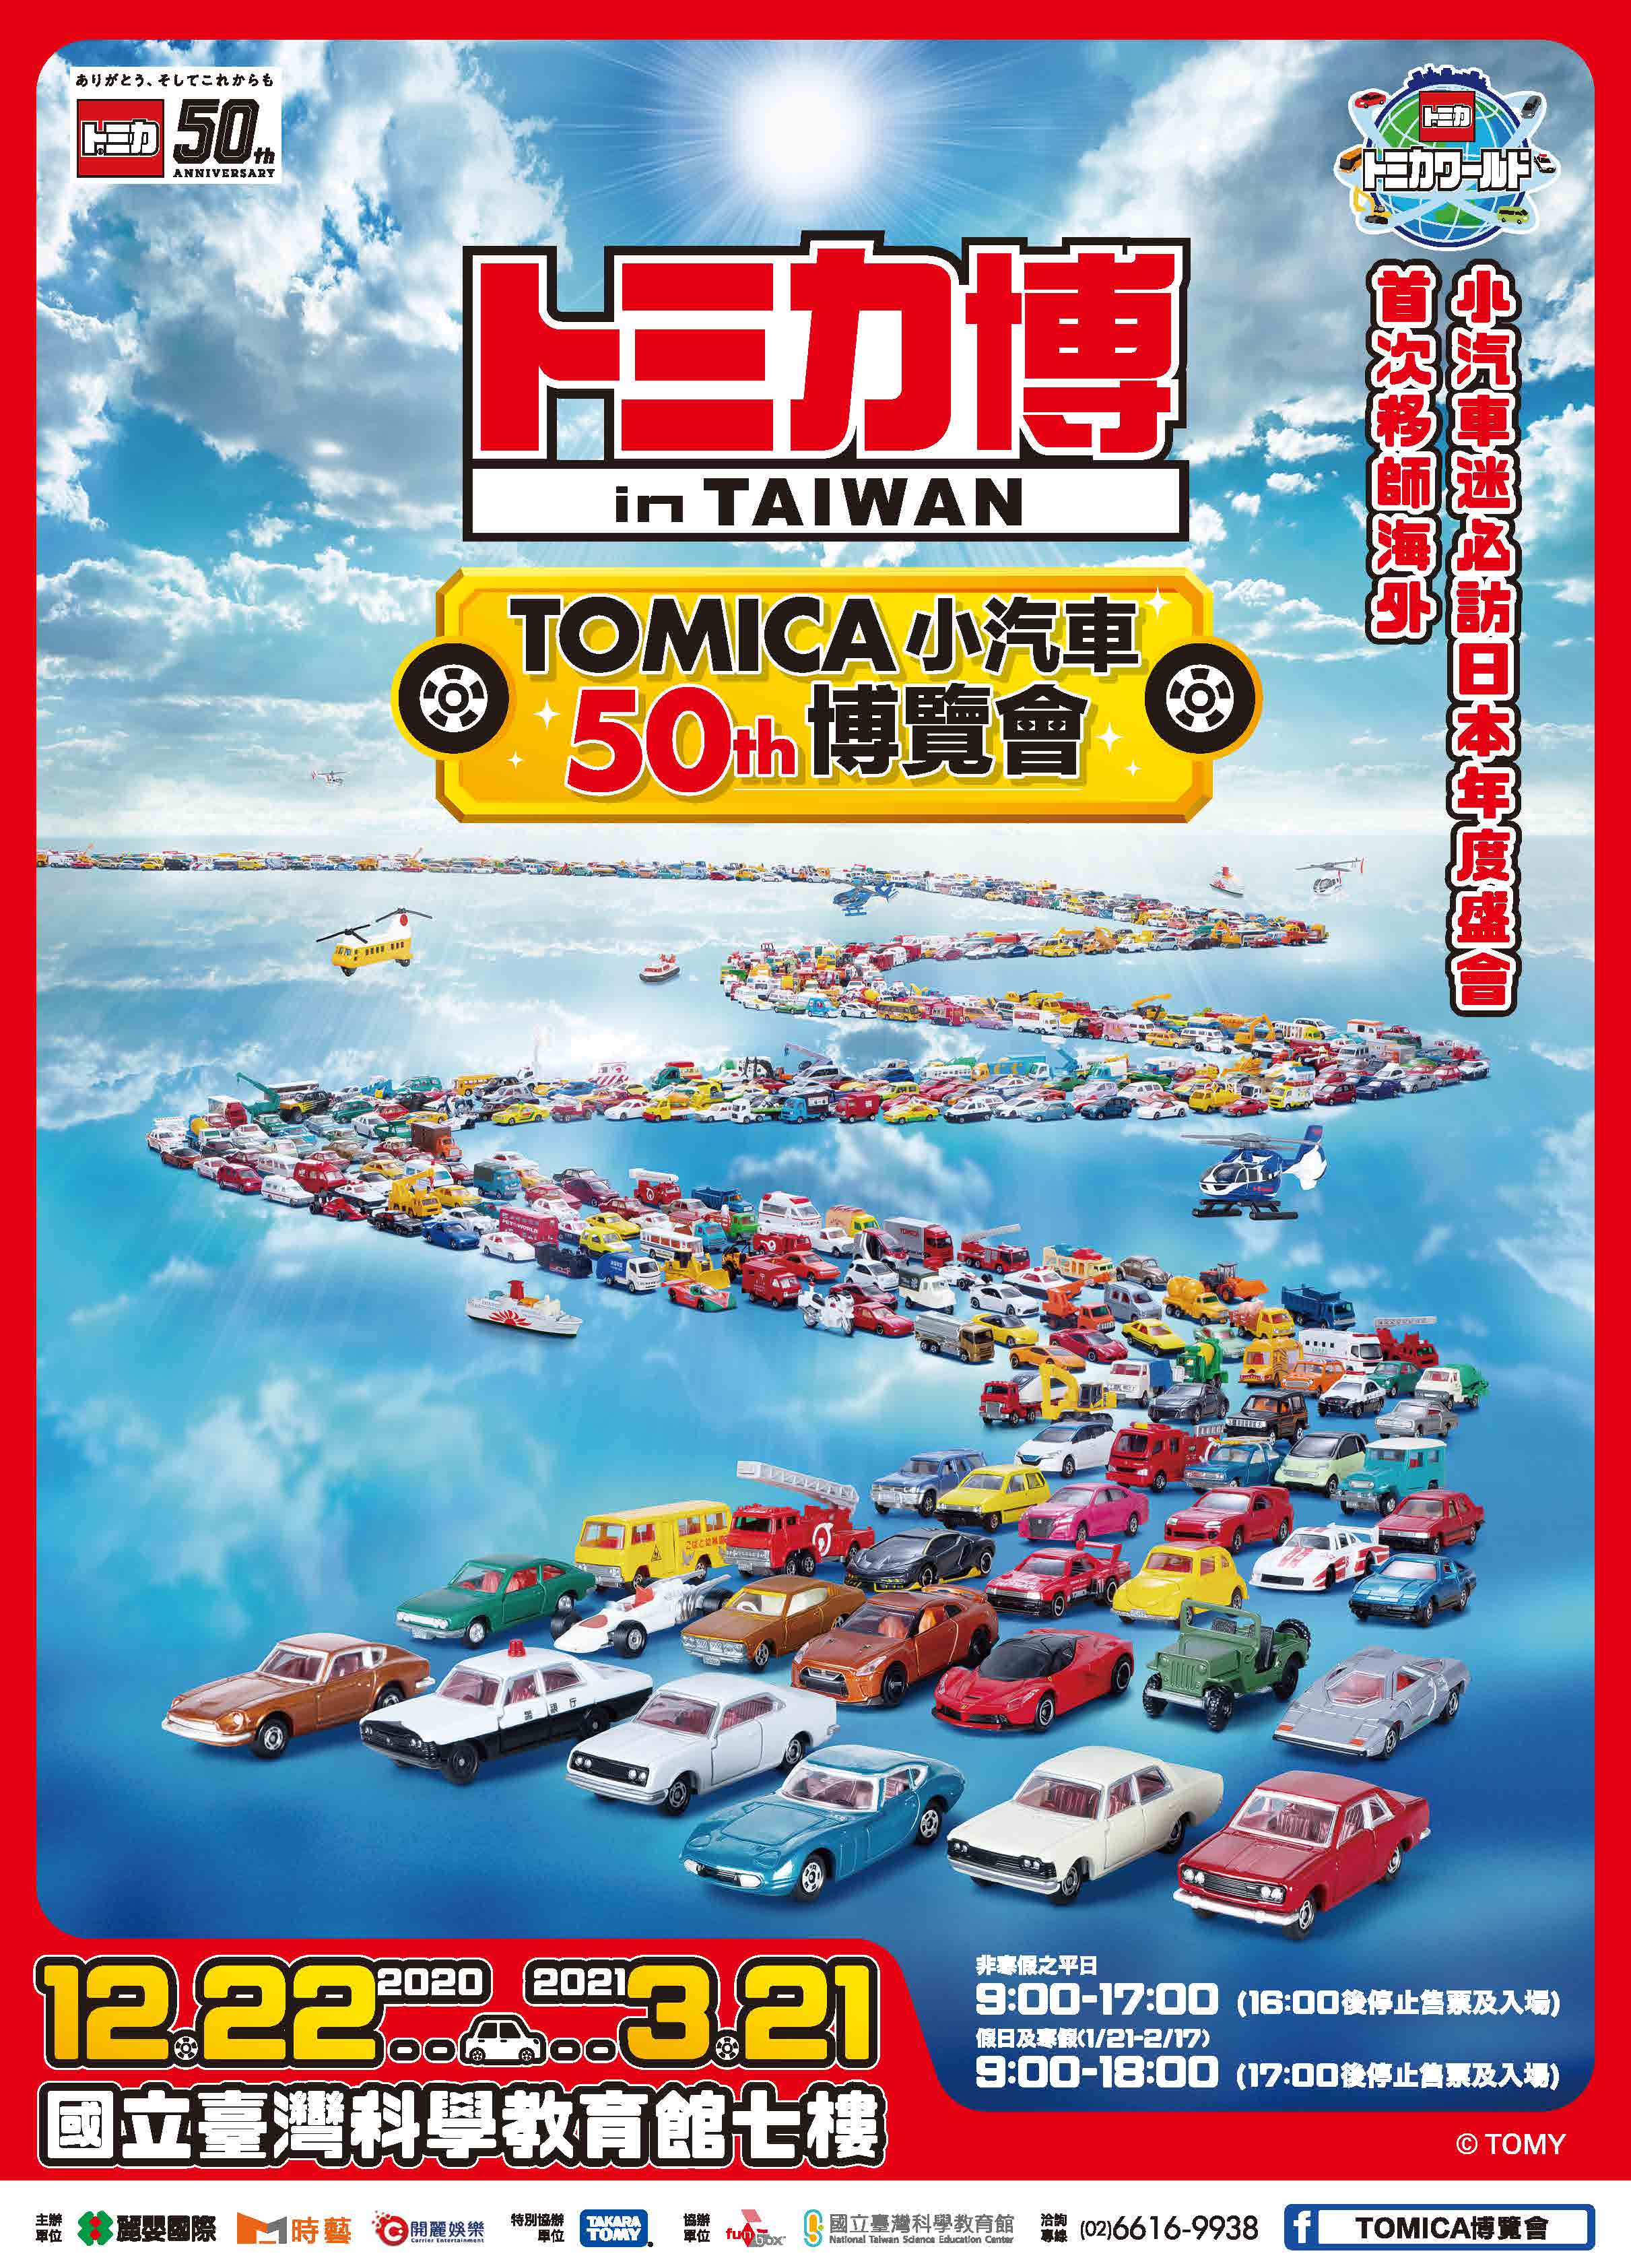 TOMICA小汽車50週年博覽會(109/12/22-110/03/21)